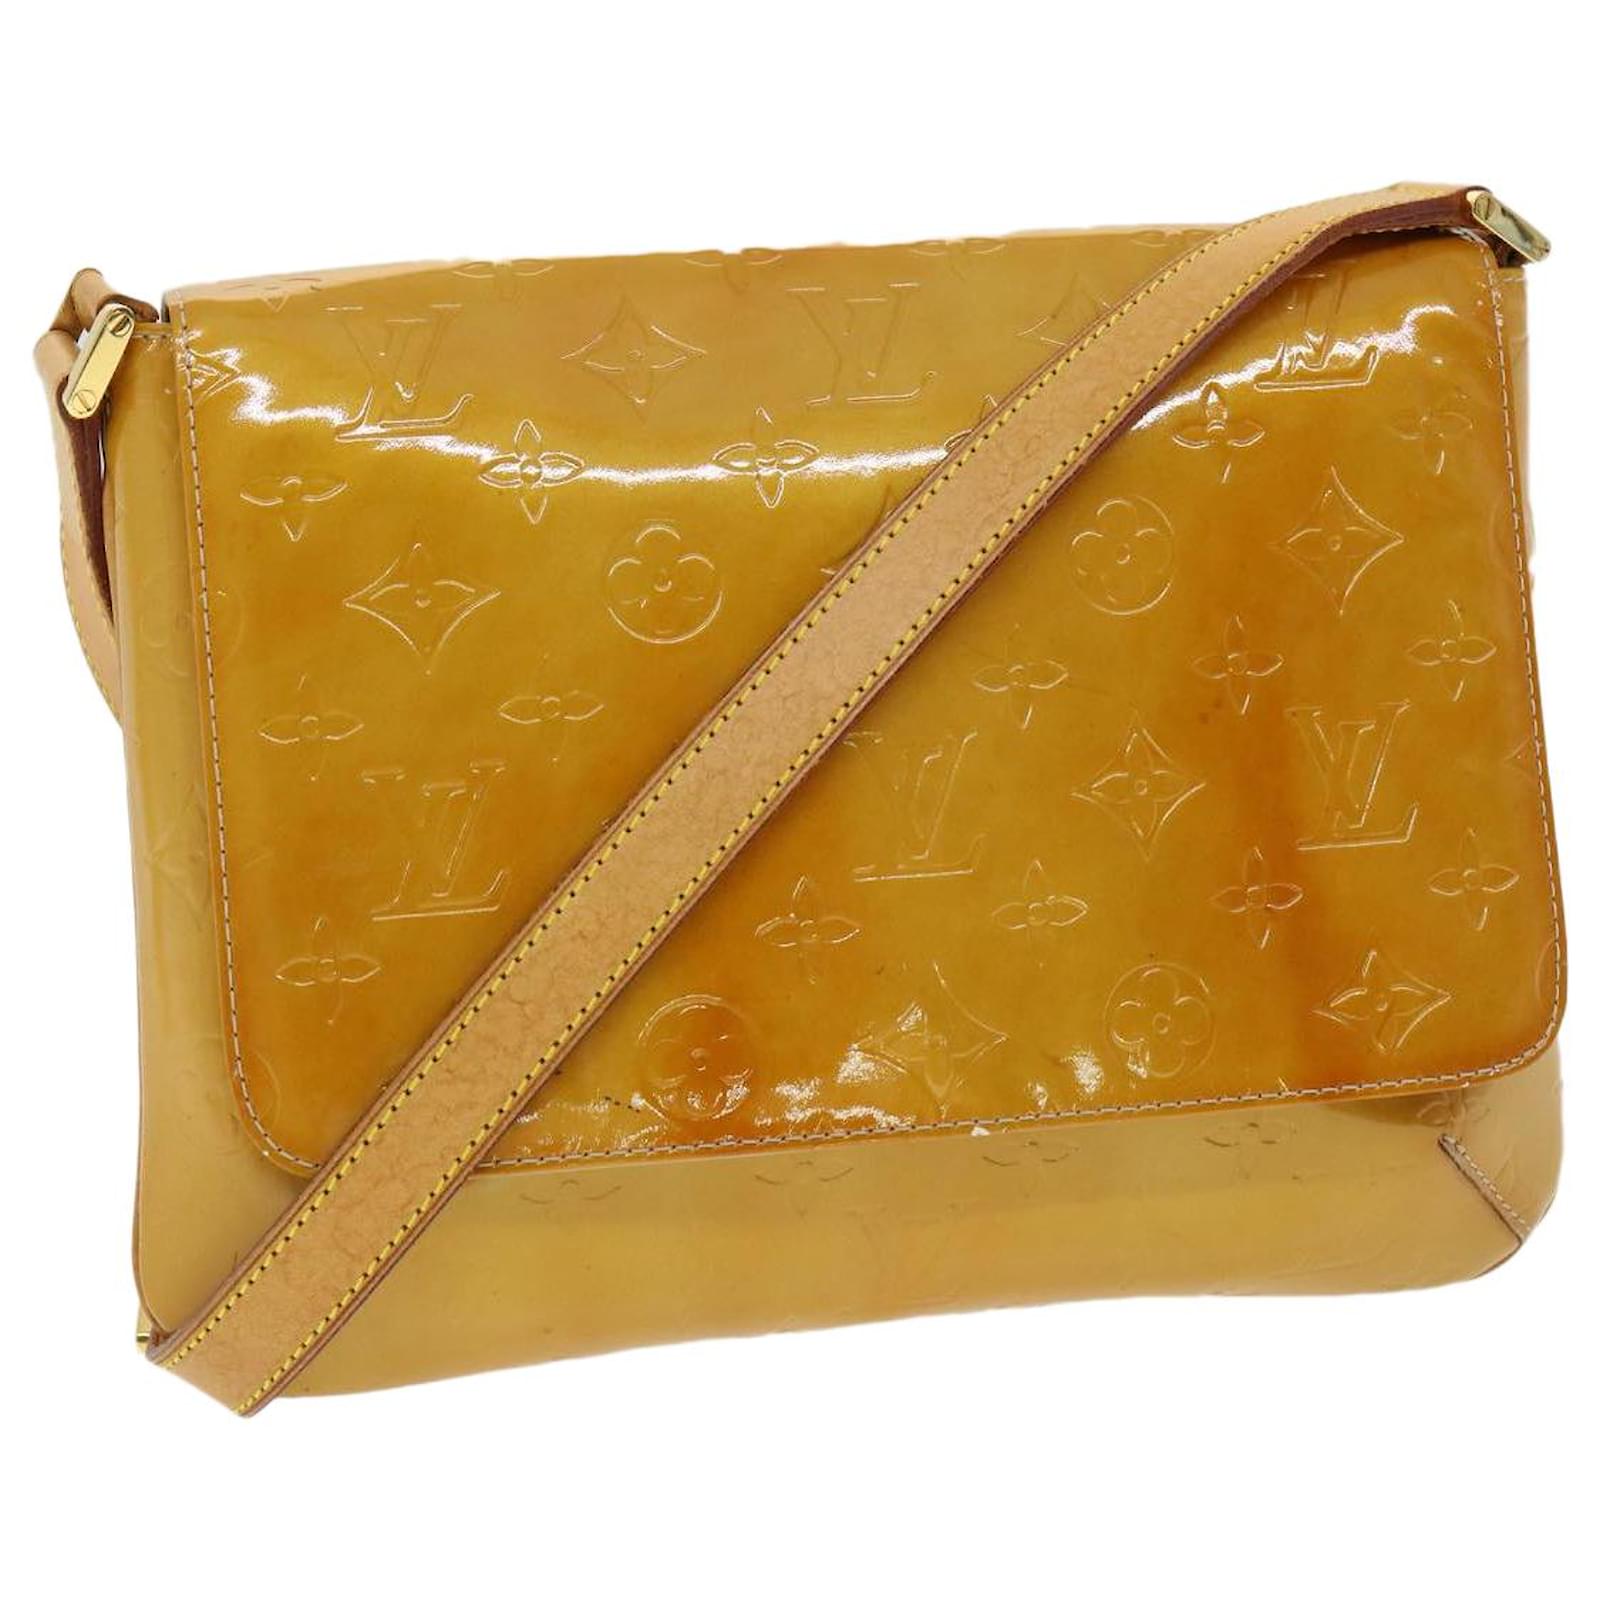 Vintage Louis Vuitton Thompson Street Yellow Vernis Leather